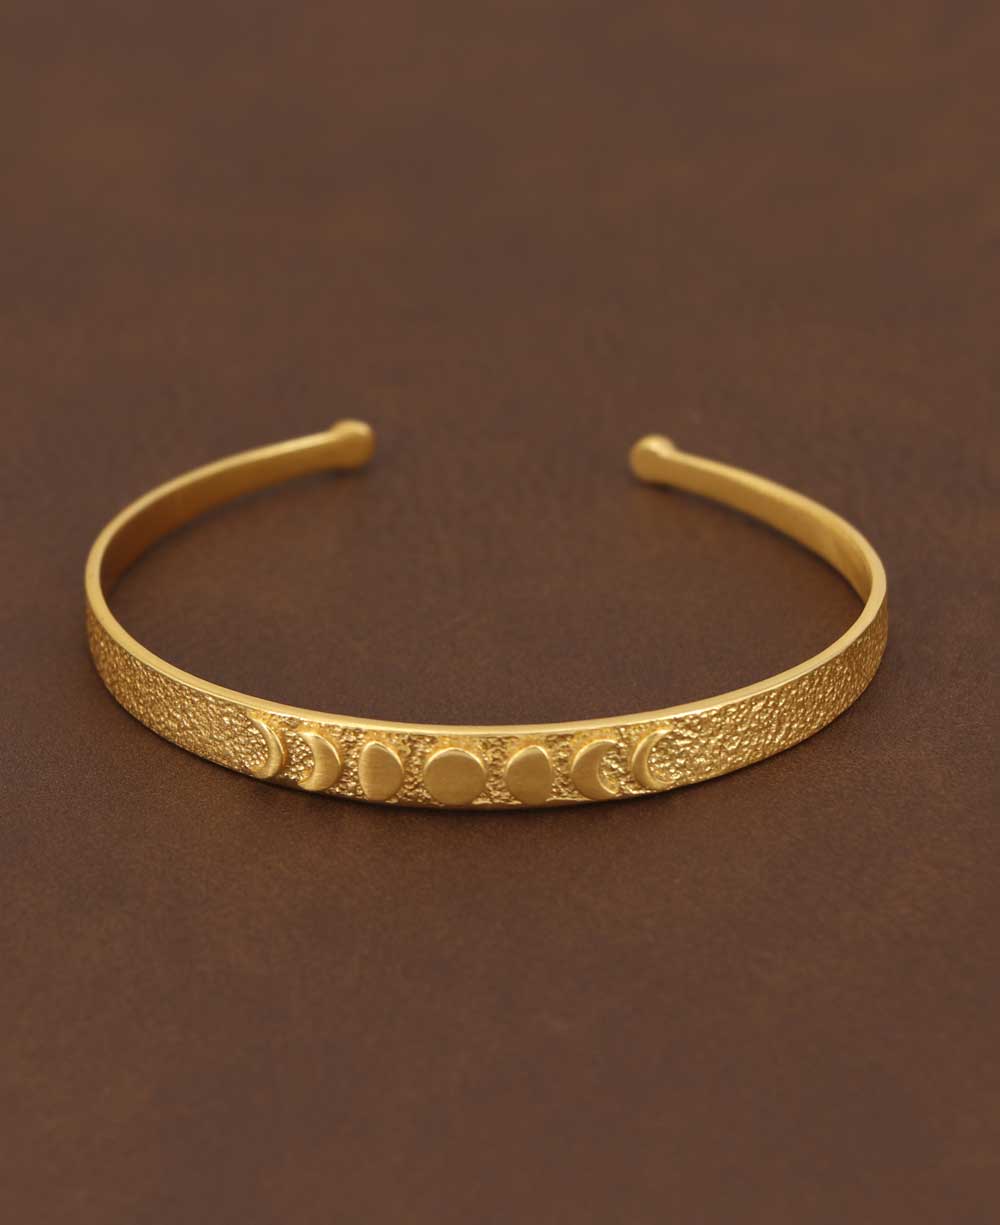 Moon Phase Trust Your Journey Gold Plated Adjustable Bracelet - Bracelets